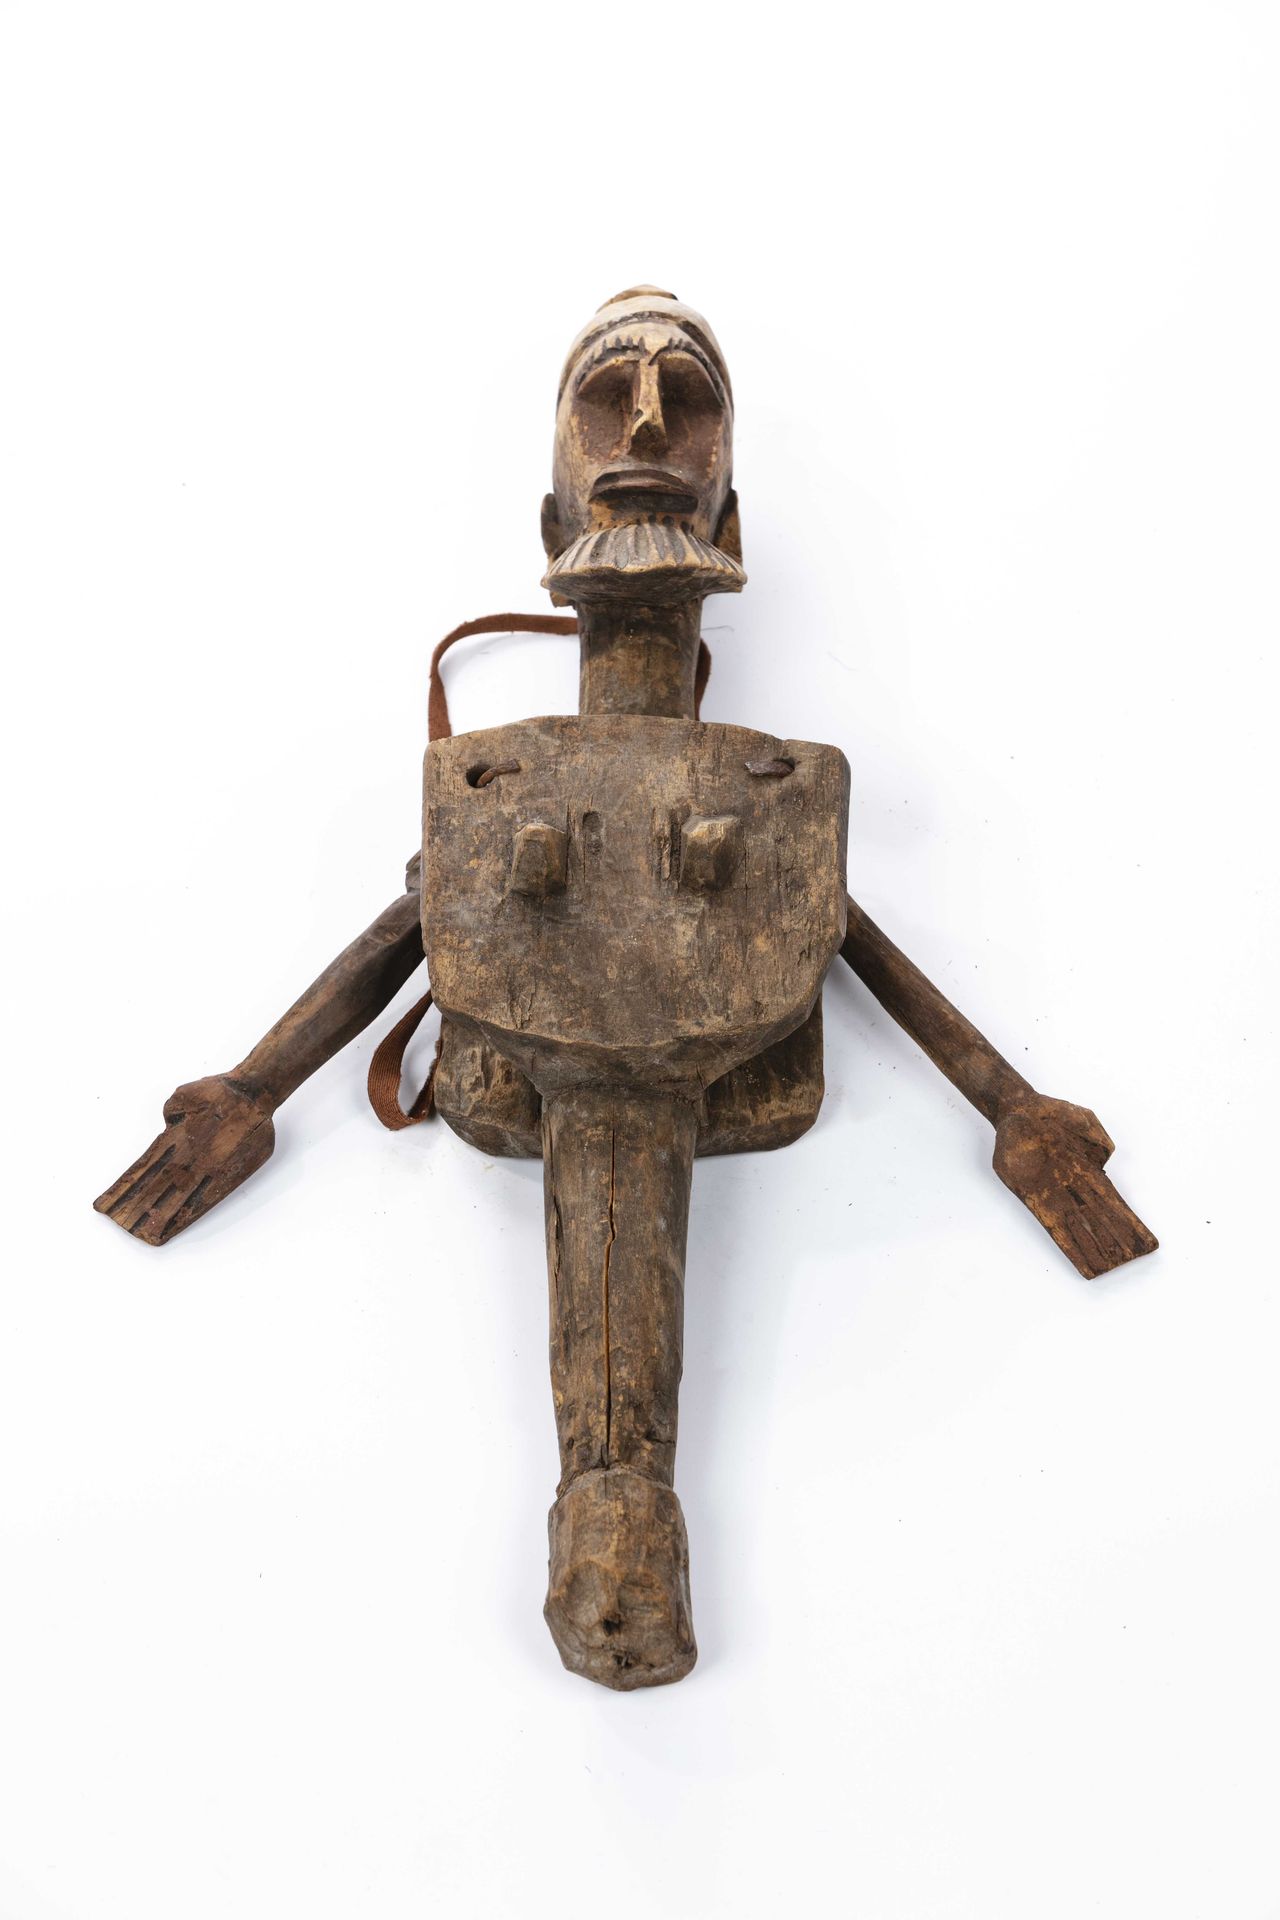 Null 波佐木偶，班巴拉风格
马里
木头，绳子
高：41厘米
身体的上半部分，长方形的胸围，从中出现一个圆形的胸部。长臂张开，形成一个V字。脸长而直，五官浮雕&hellip;